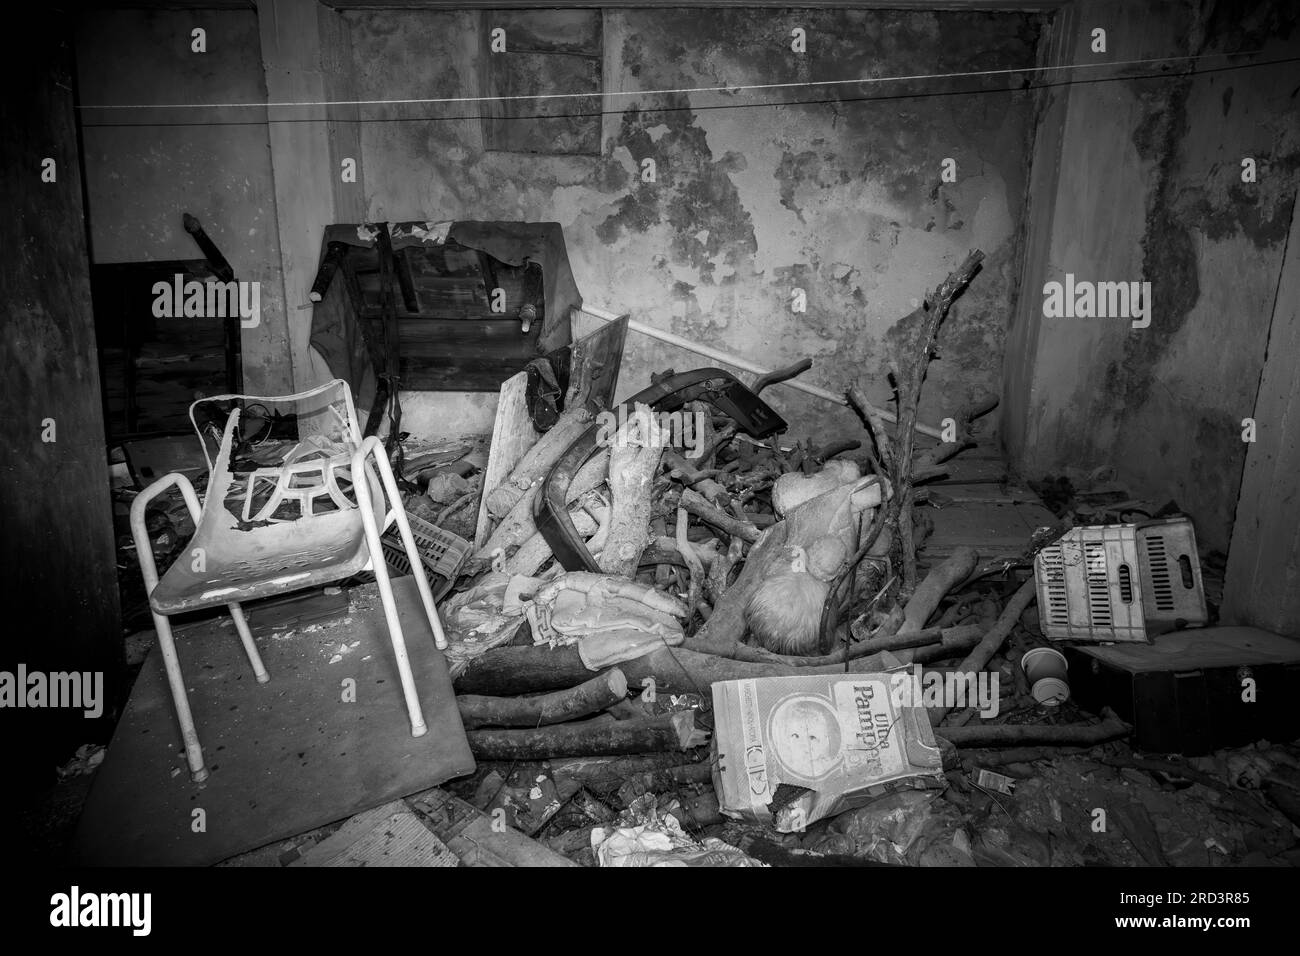 Una camera in una casa abbandonata piena di macerie, mobili rotti e rifiuti domestici. Un'immagine monocromatica. Foto Stock